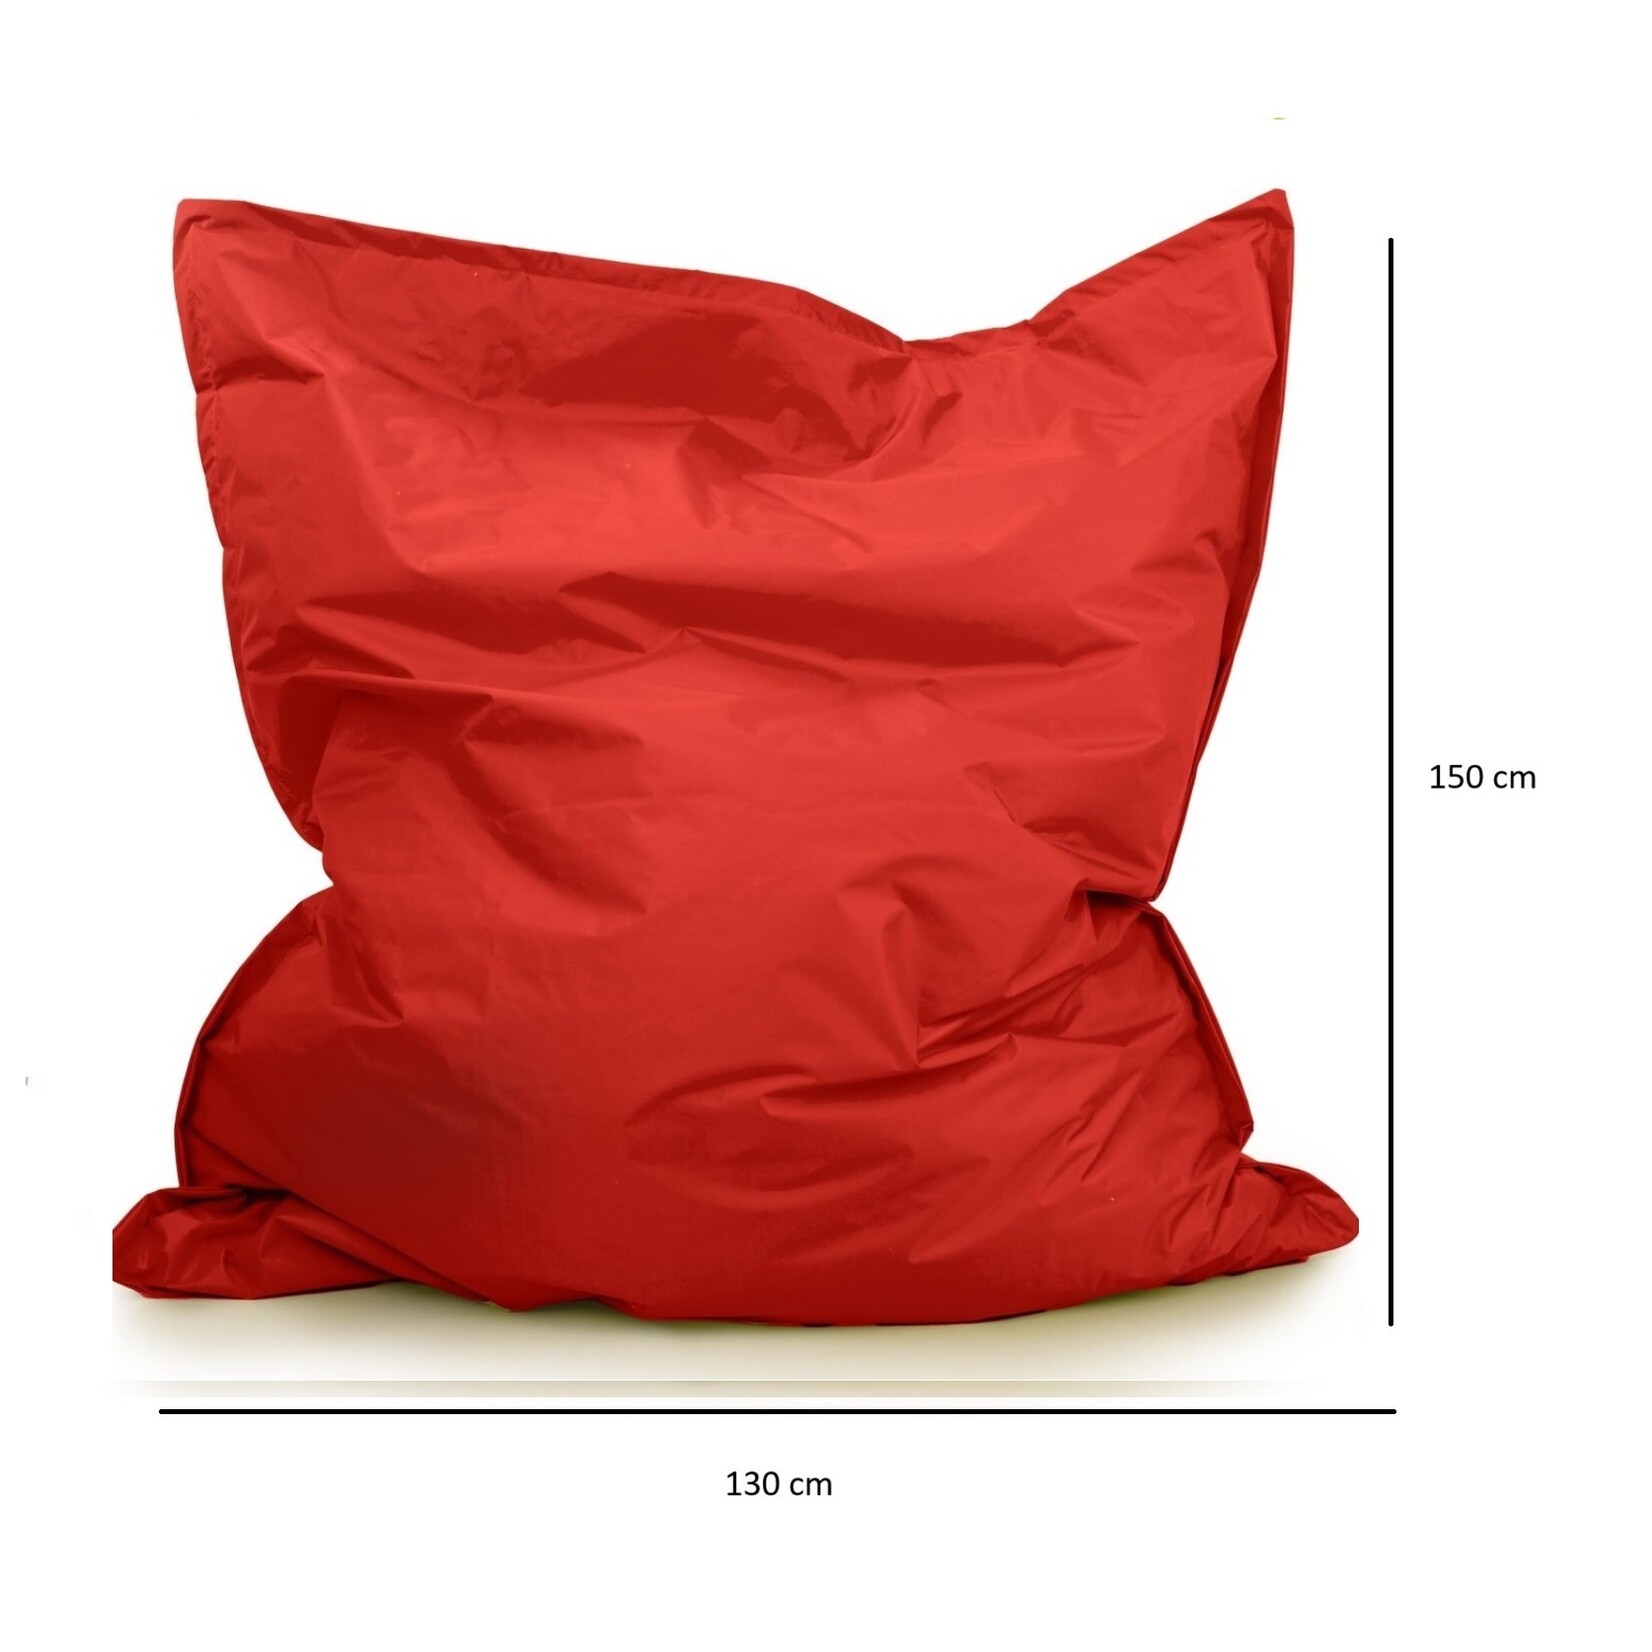 Drop & Sit beanbag - Red - 130 x 150 cm - indoor and outdoor